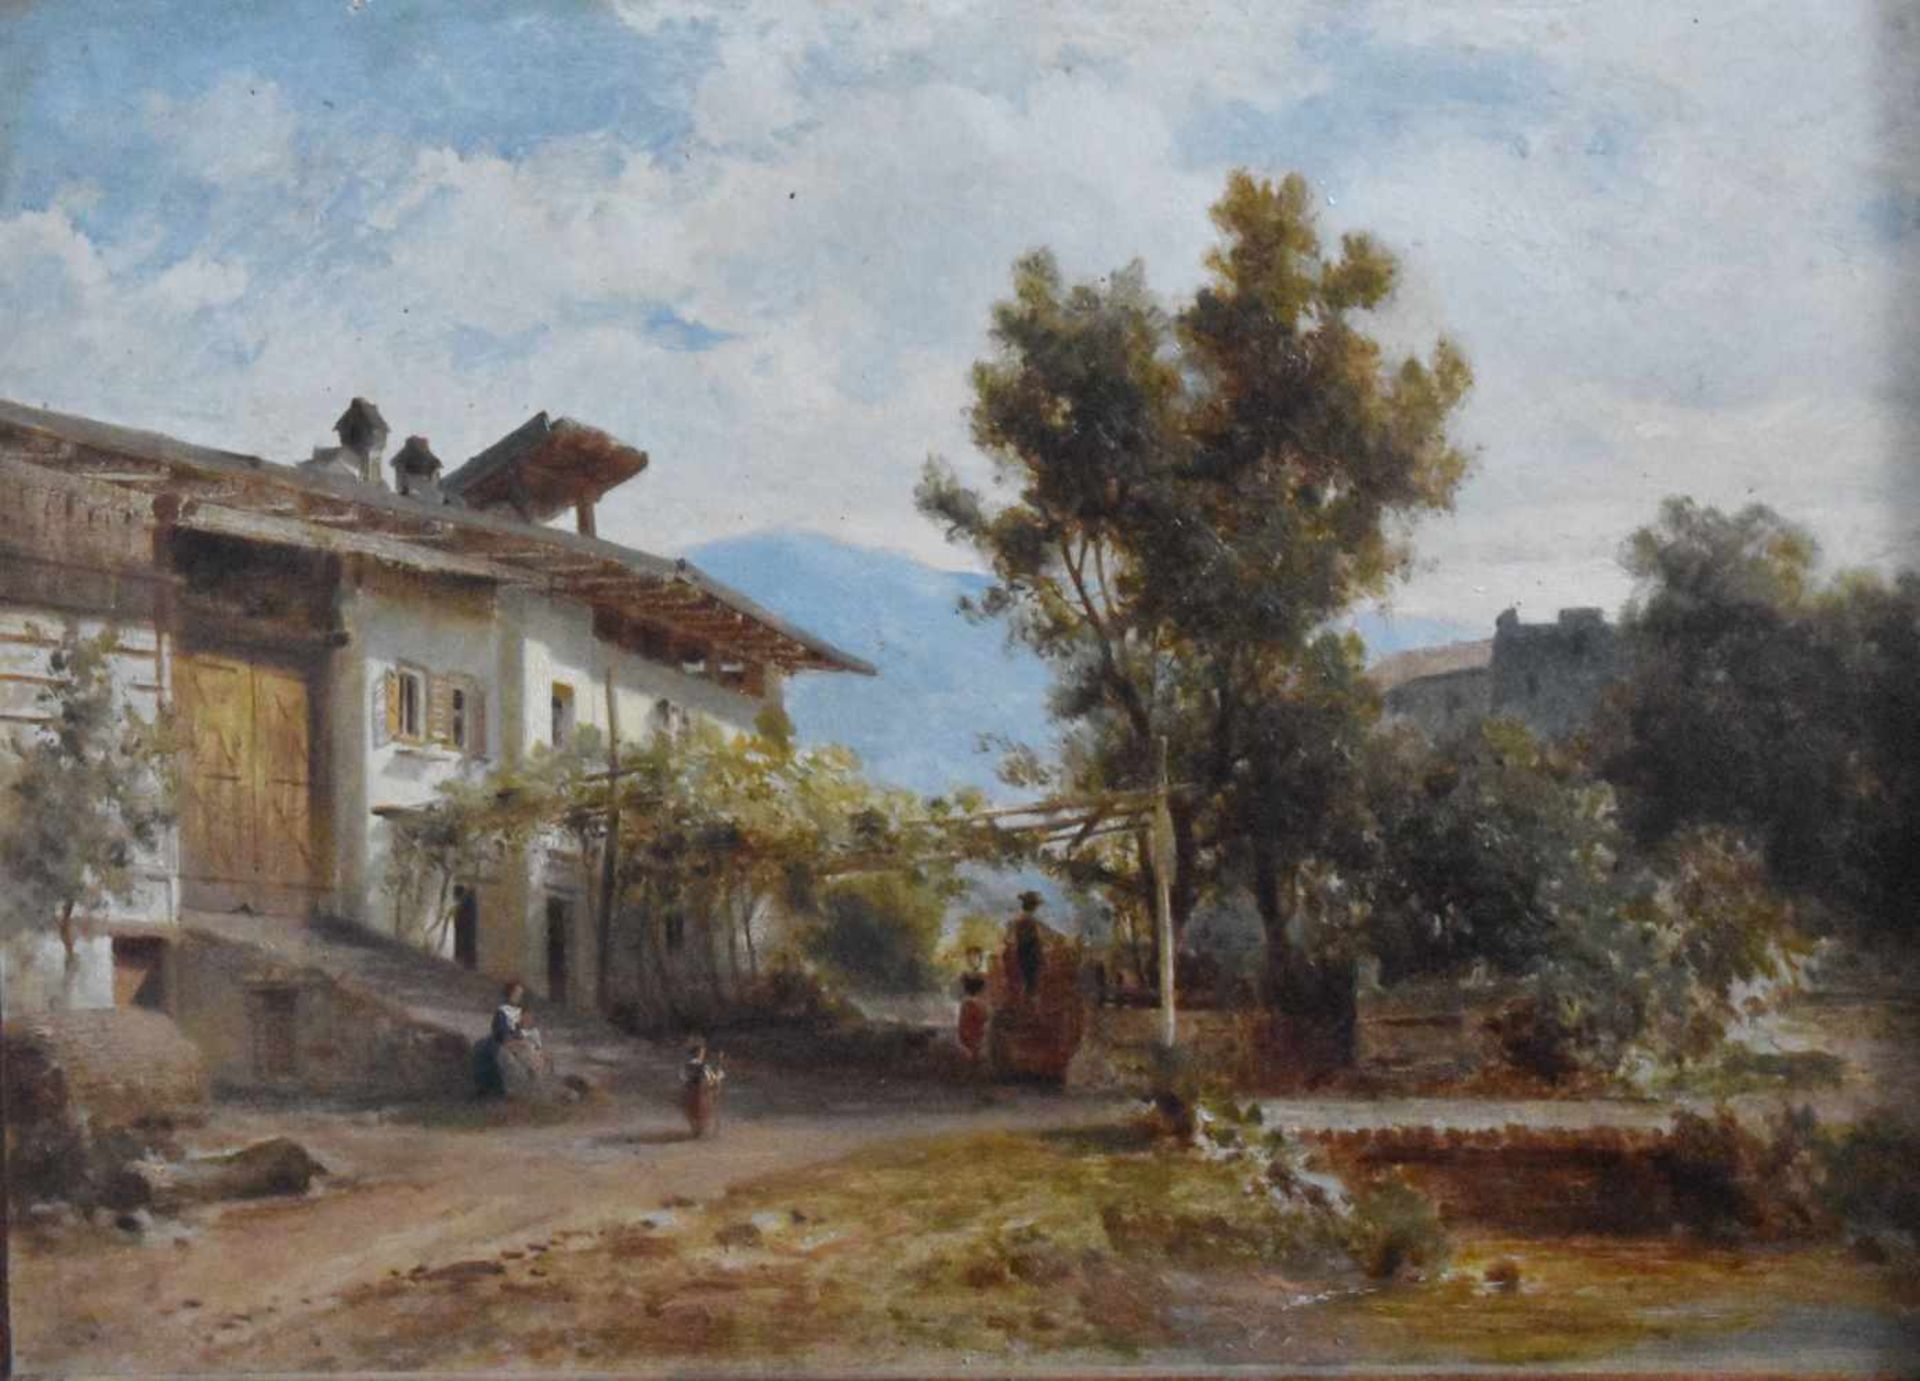 Landschaftsmaler, Tirol um 1880, "Bauerngehöft"